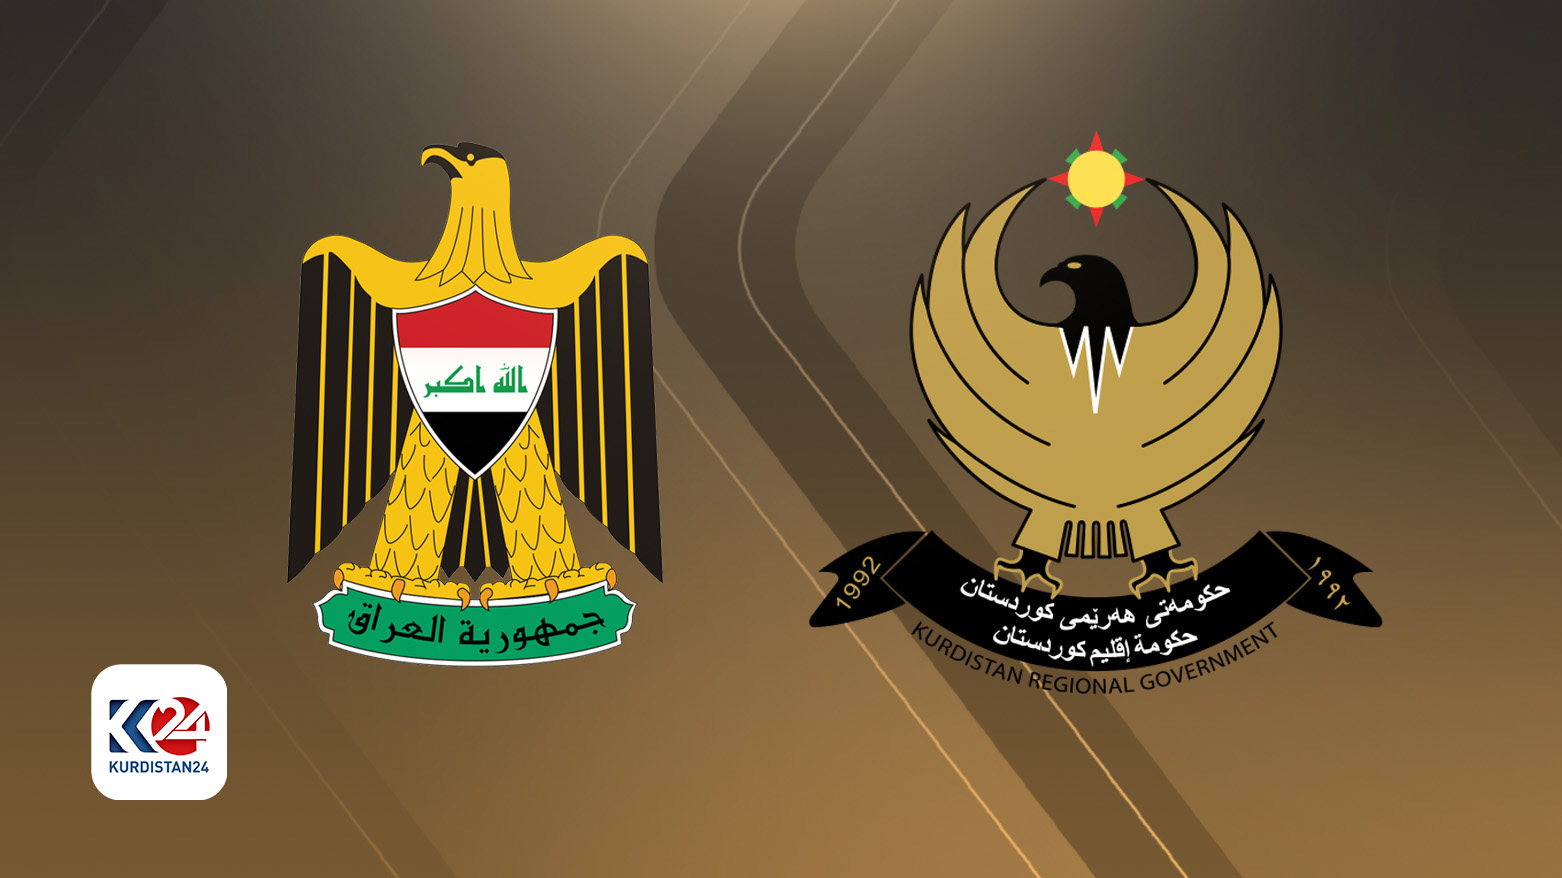 Logoyên Hikûmeta Herêma Kurdistanê û Hikûmeta Federalî